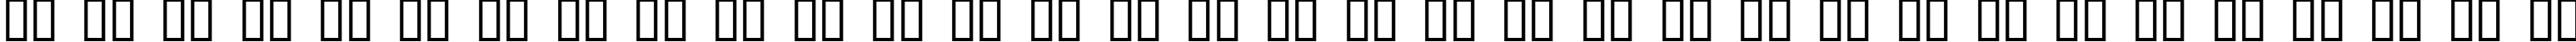 Пример написания русского алфавита шрифтом Chelsea